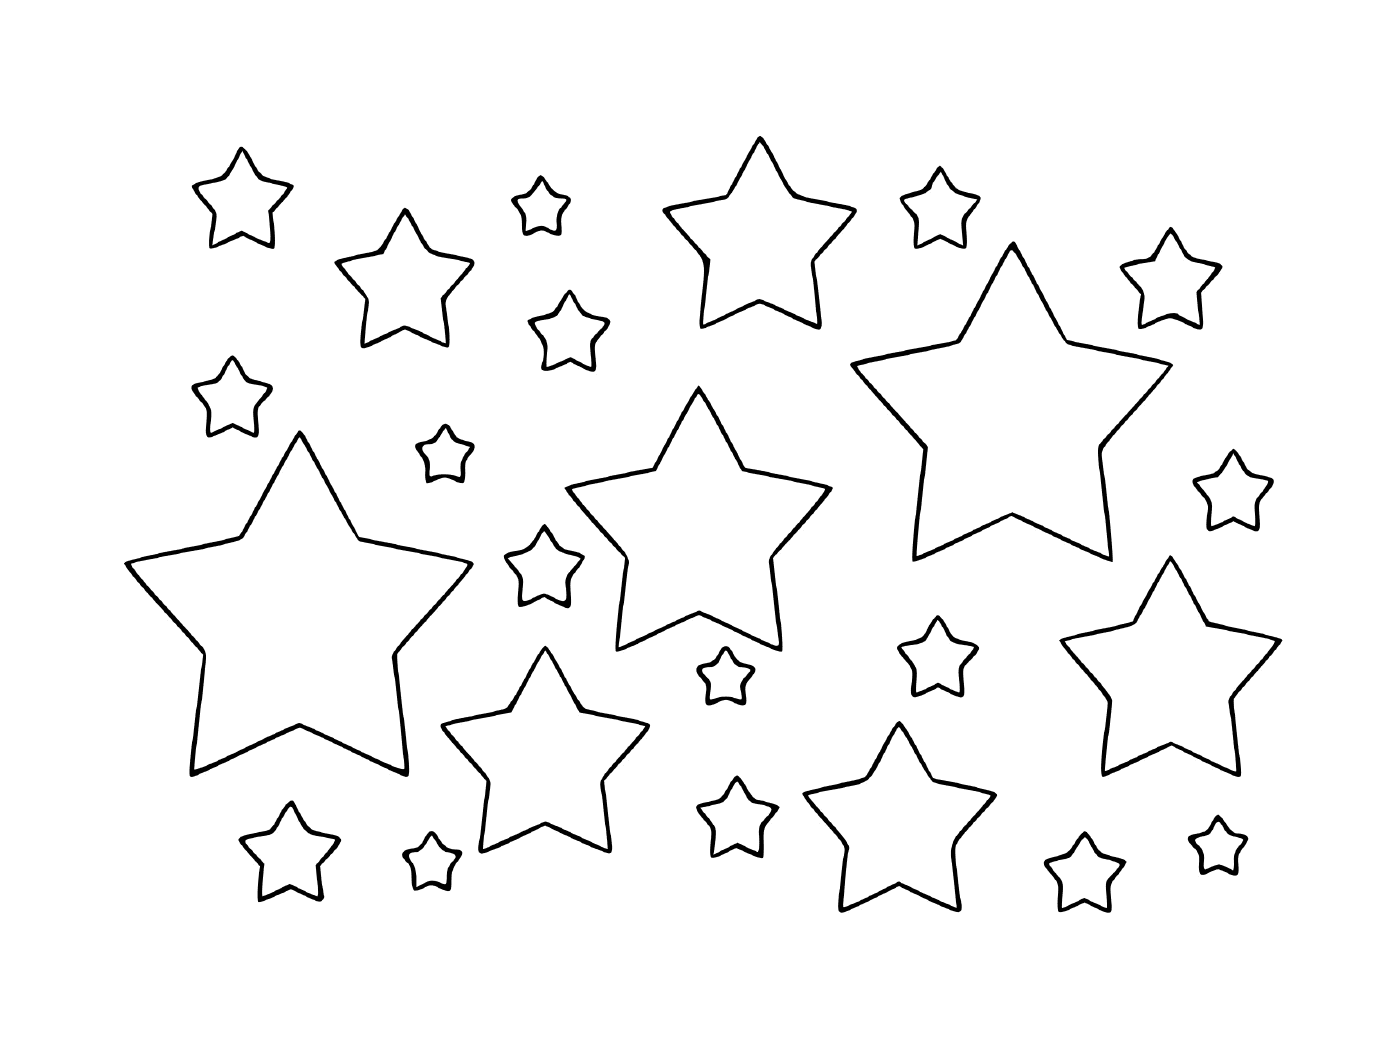  Eine Welt voller Sterne 